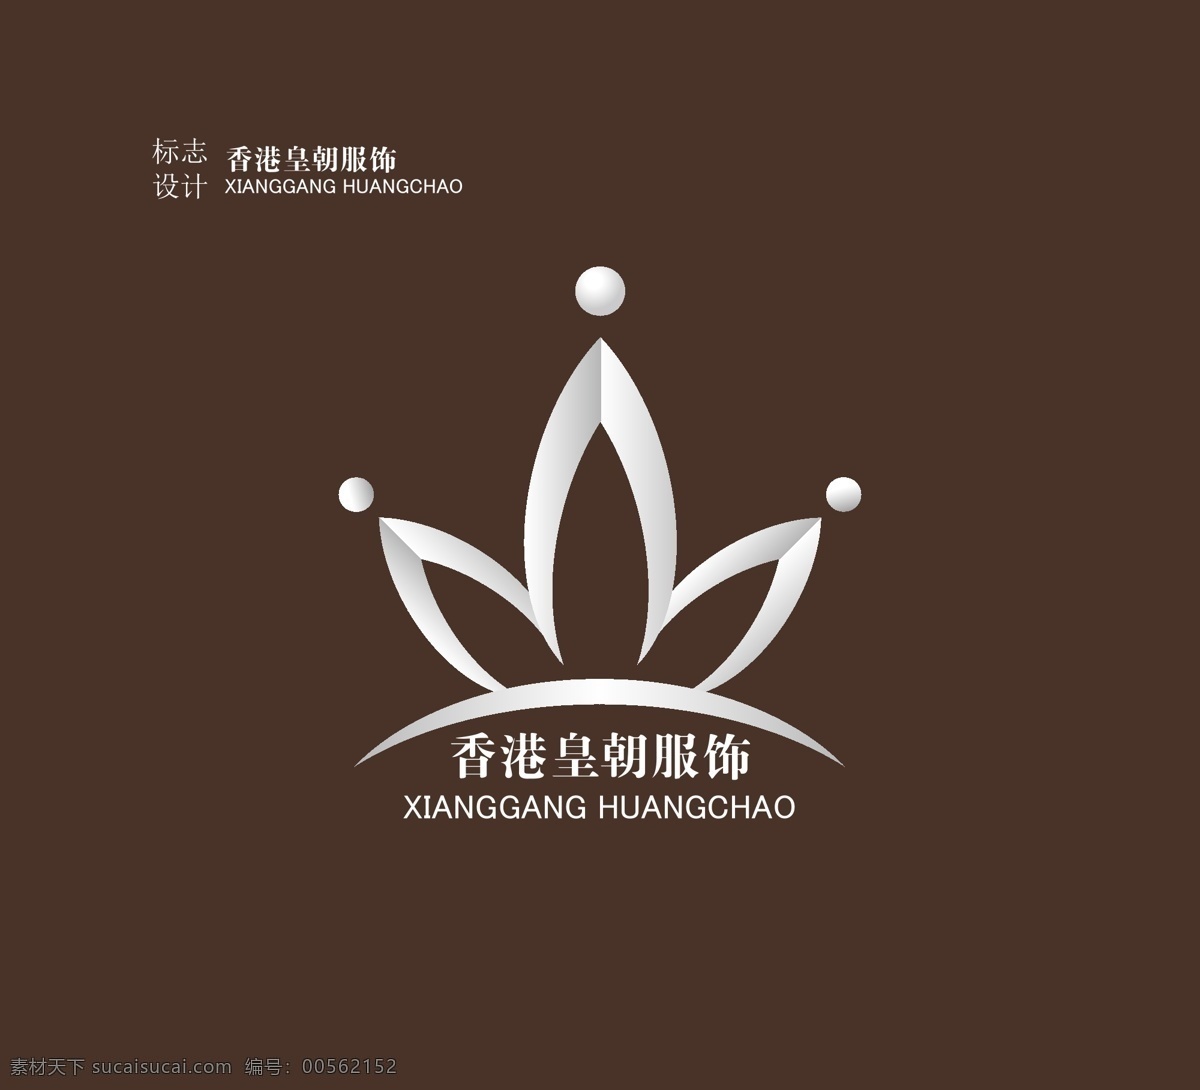 服饰标志 香港 皇朝 服饰 标志 标识 企业 logo 标识标志图标 矢量